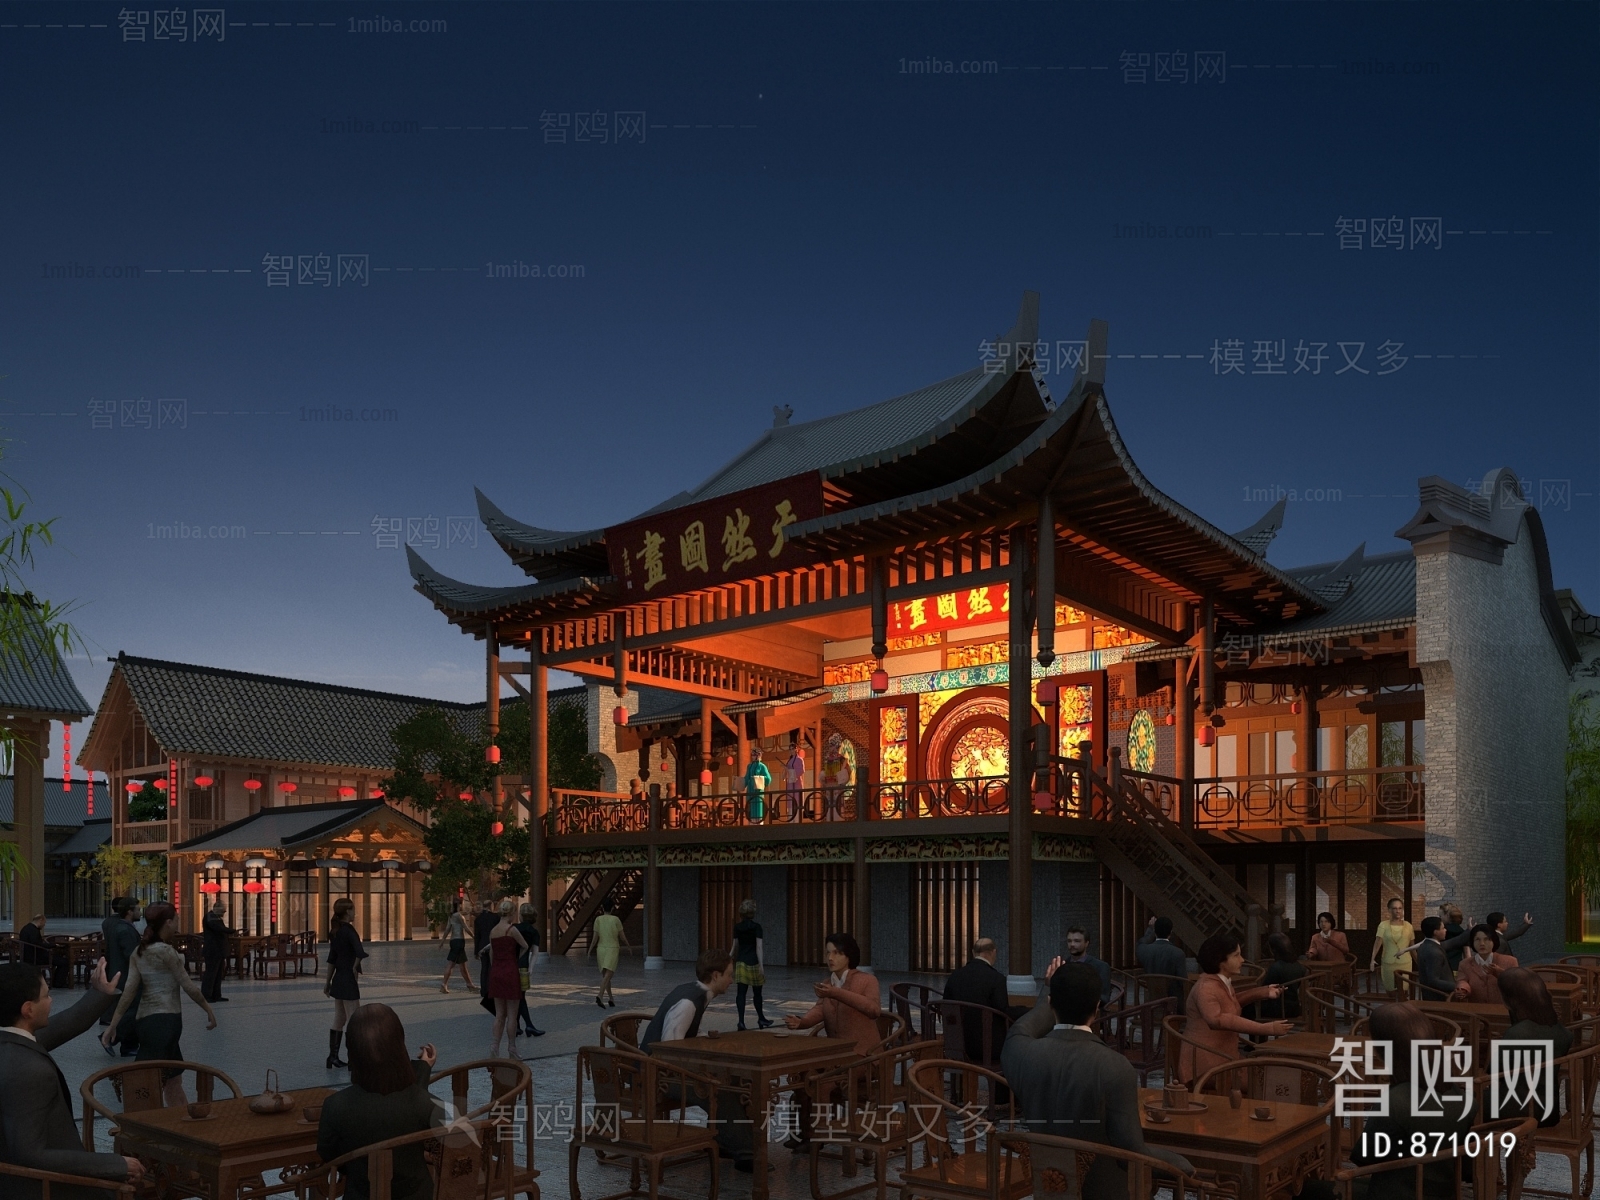 中式古建筑戏楼广场夜景